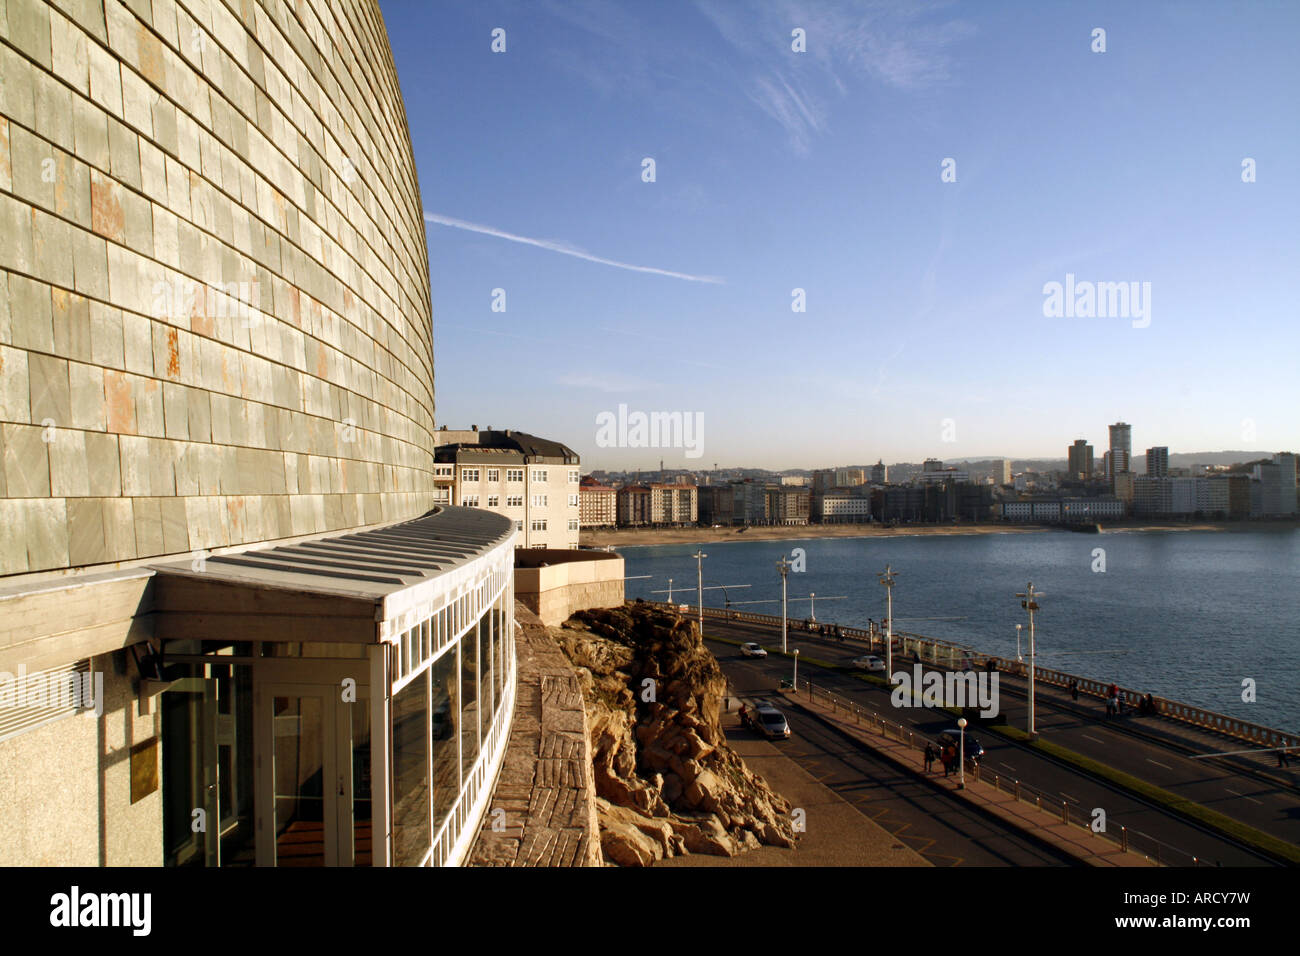 Domus le Musée de l'homme, La Coruña, Espagne Banque D'Images